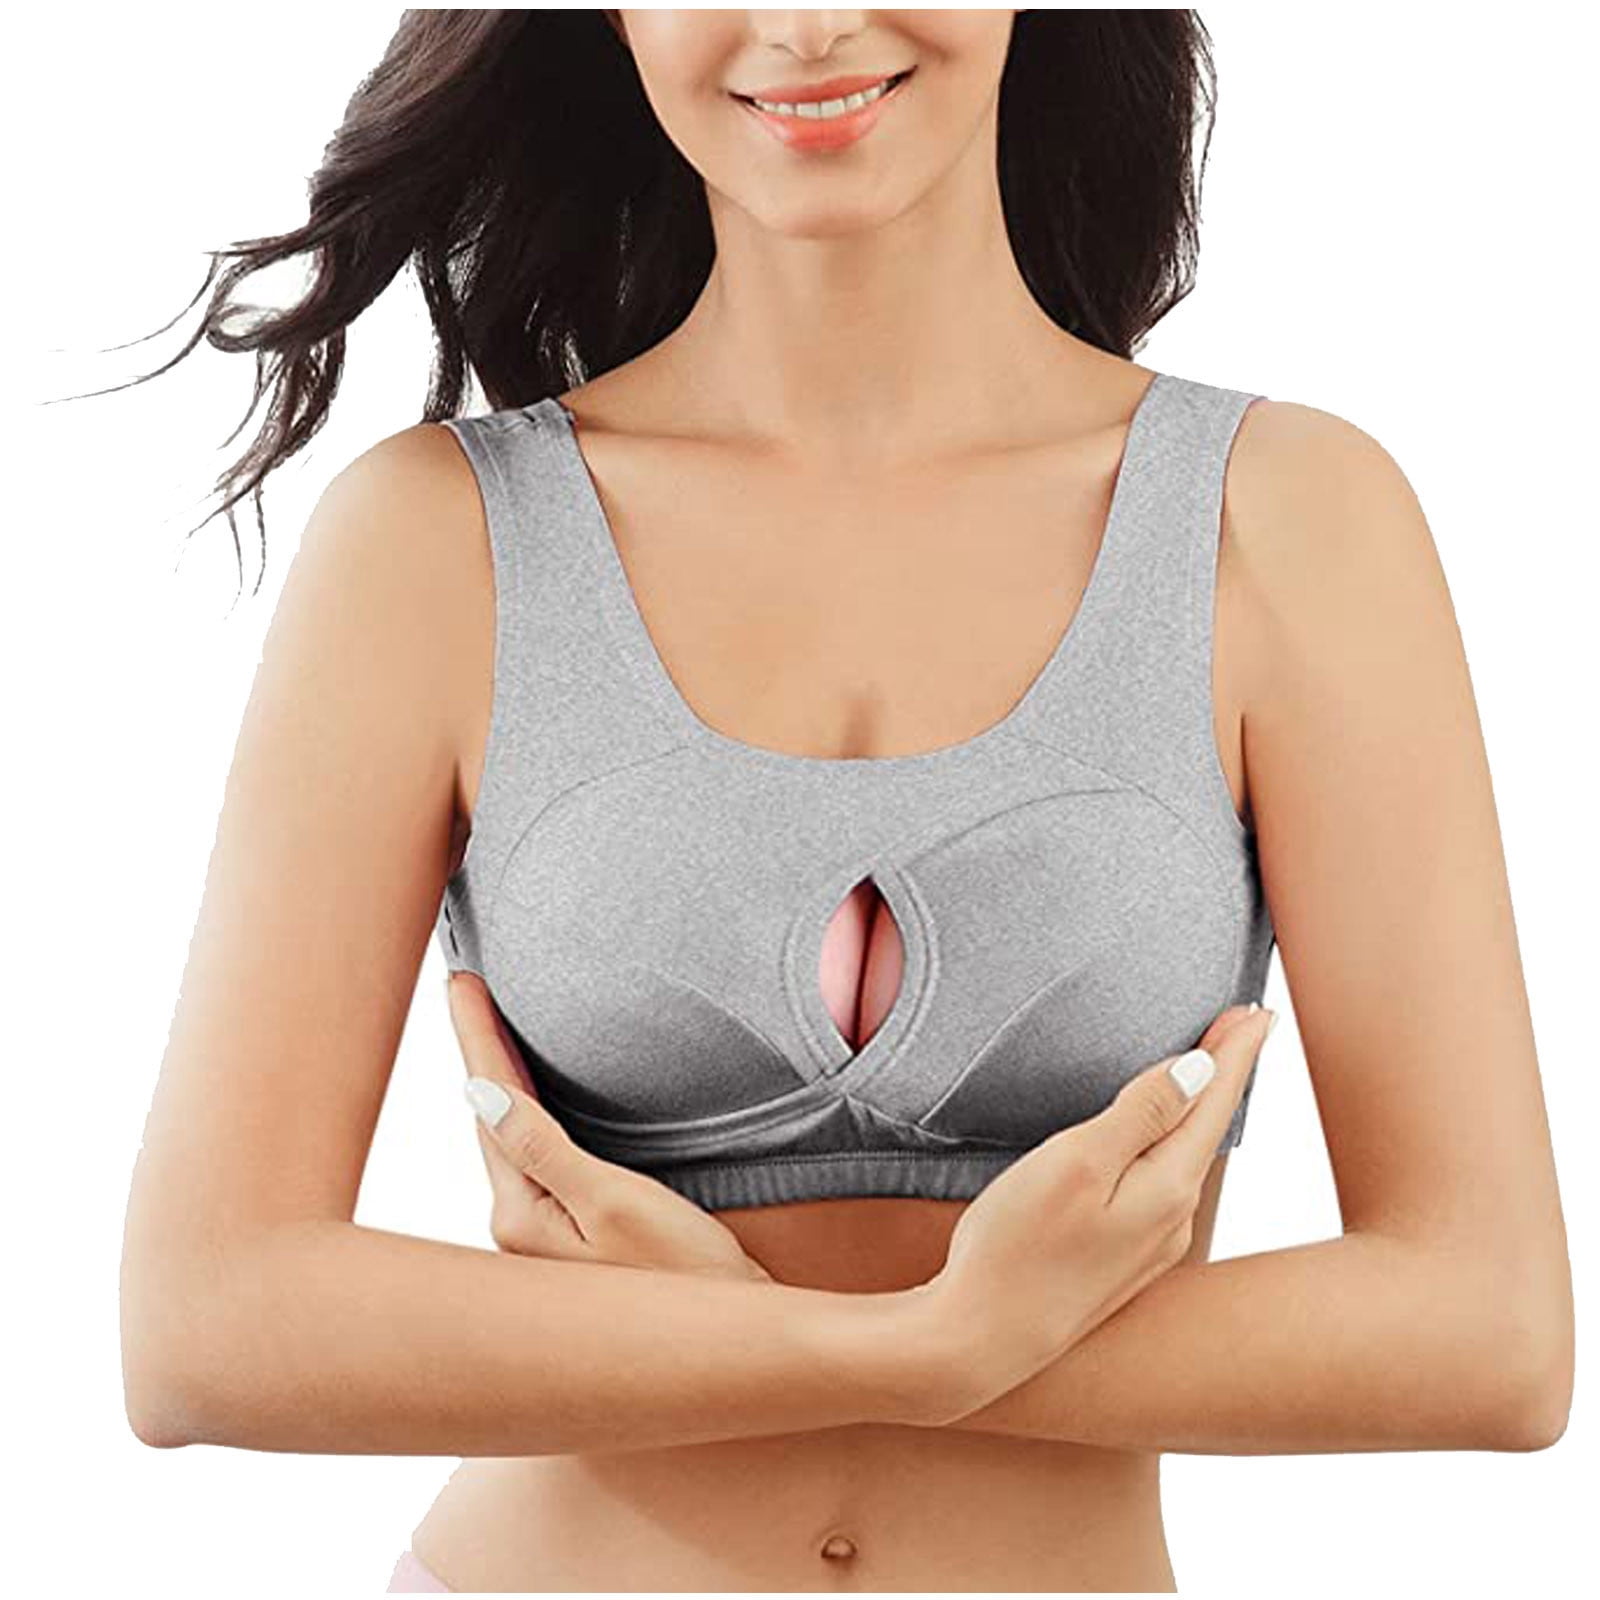 BELLZELY Bras for Women Plus Size Clearance Women's Bra Underwear